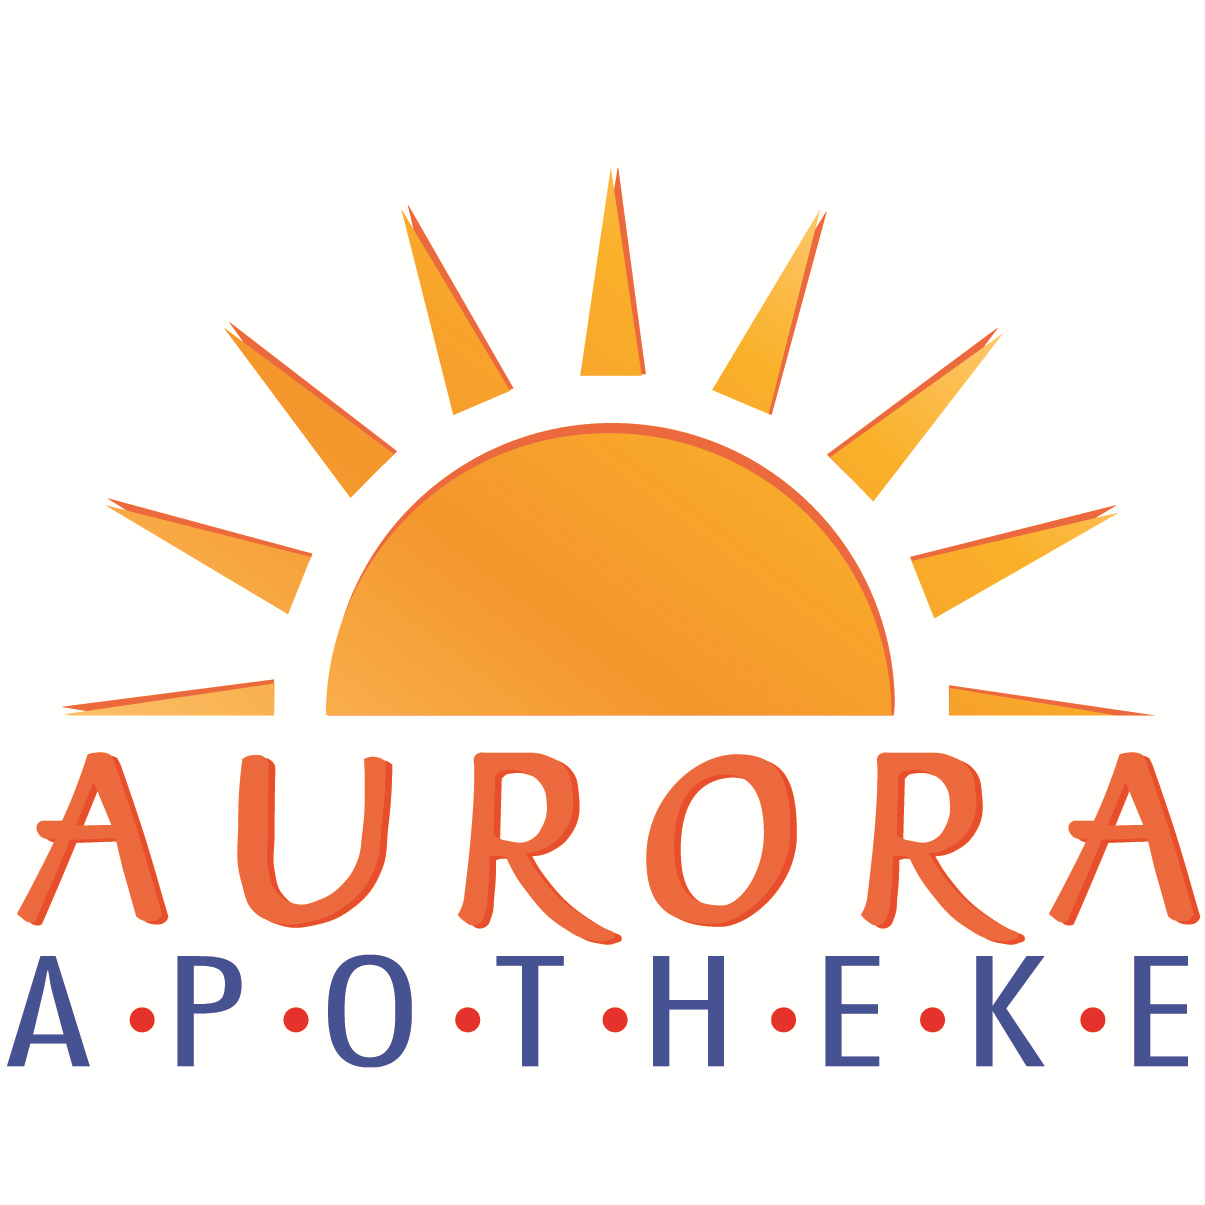 Aurora-Apotheke in München